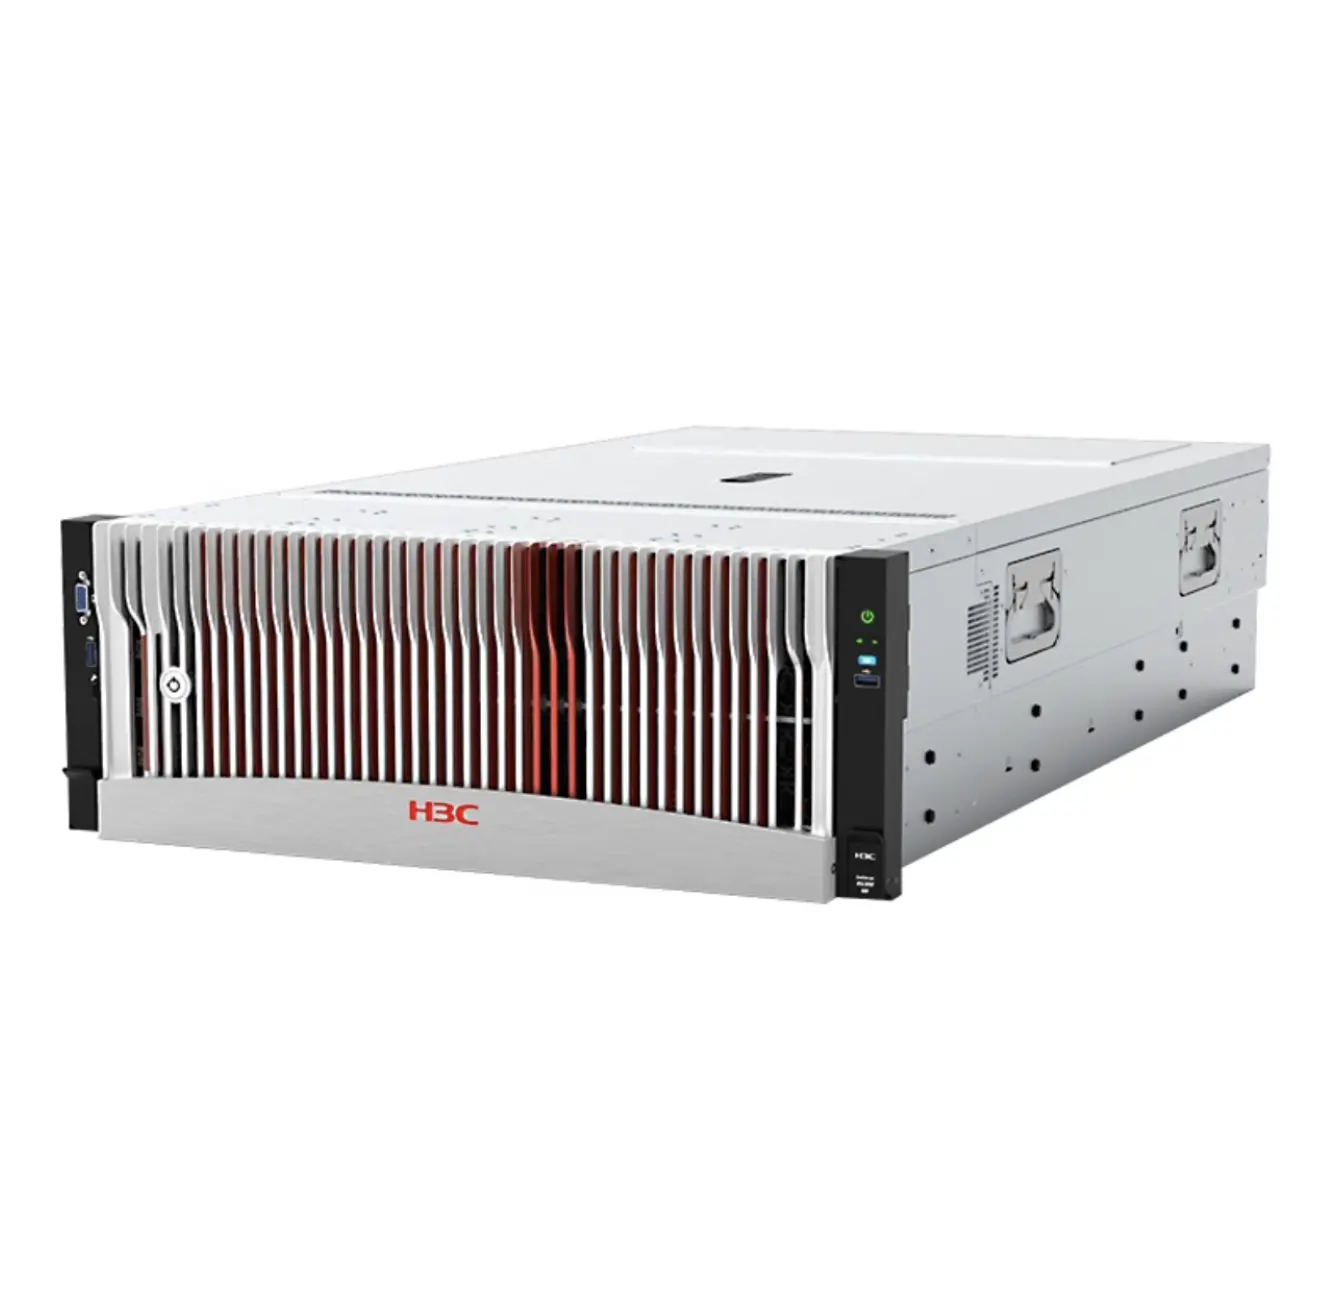 Последняя версия H3C UniServer R5300 G5 4U сервер GPU сервер R5300G5 оконный 2009 сервер